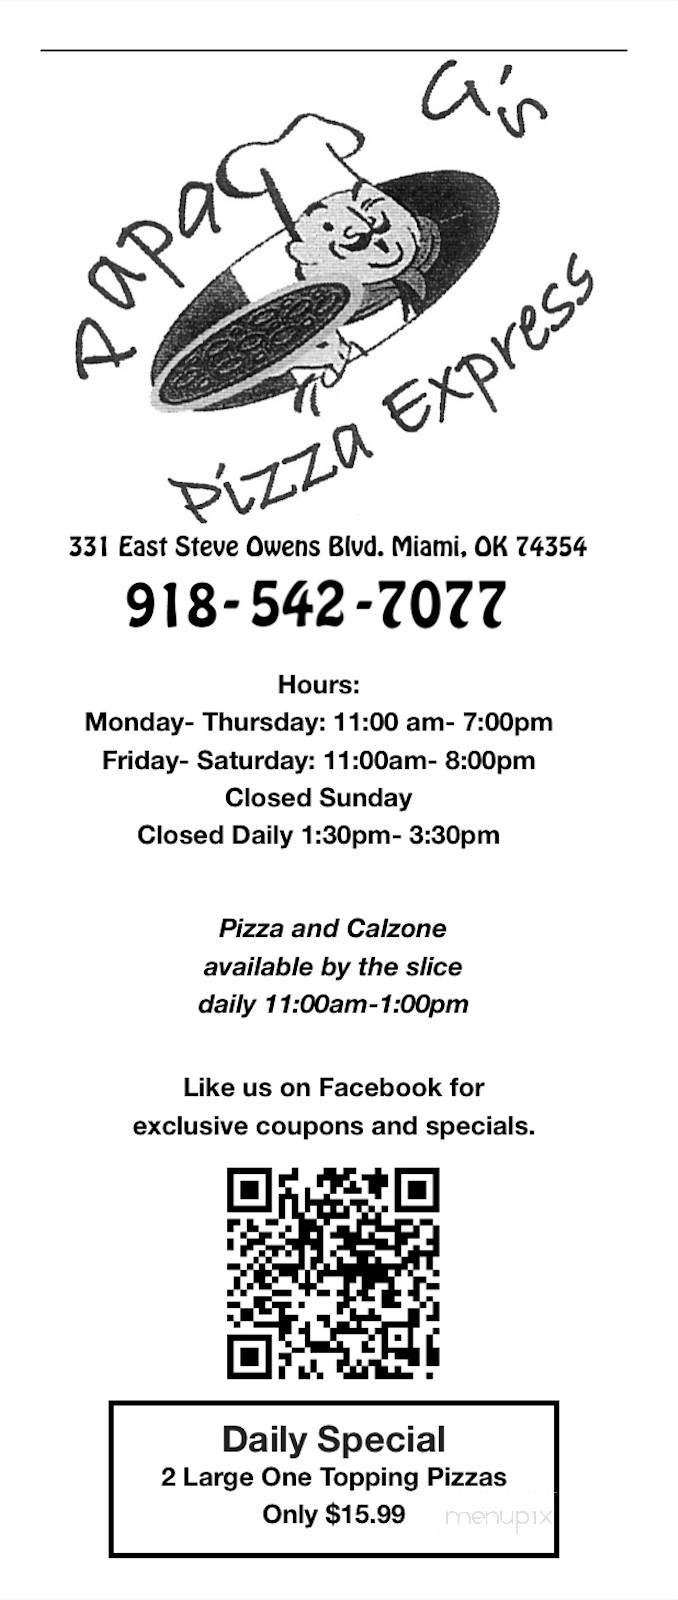 Papa G's Pizza Express - Miami, OK